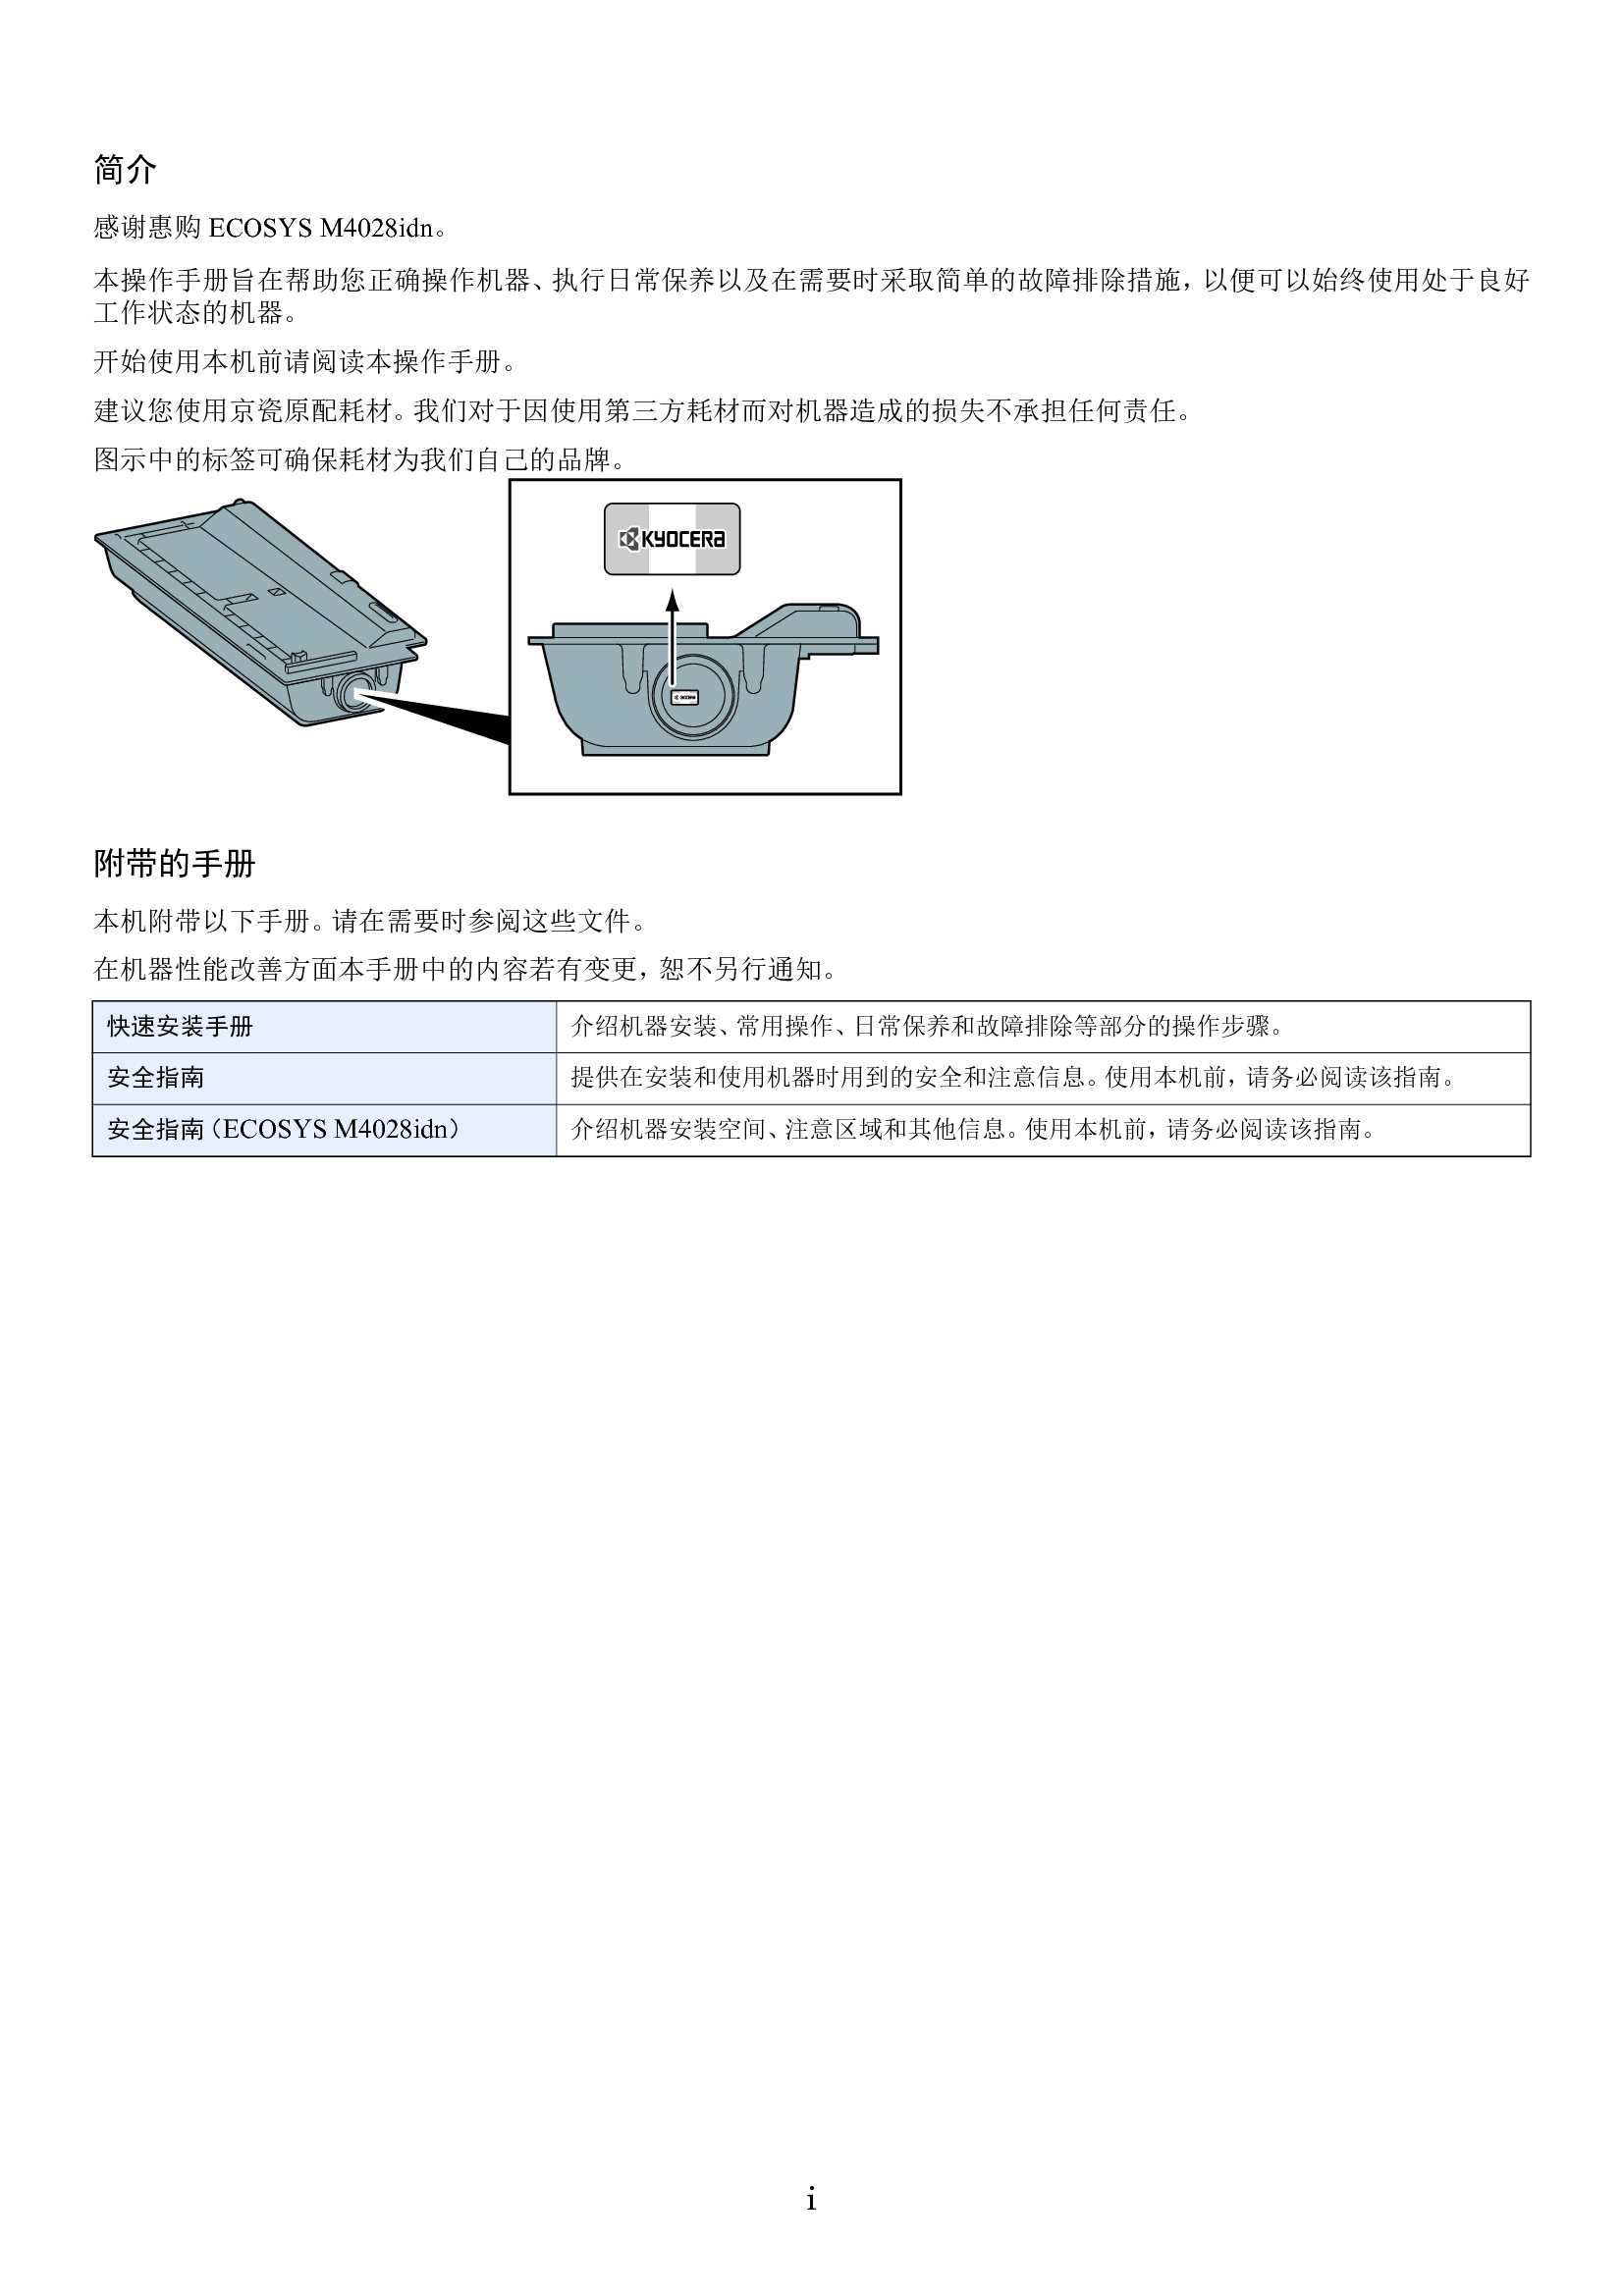 京瓷 Kyocera ECOSYS M4028idn 操作手册 第1页